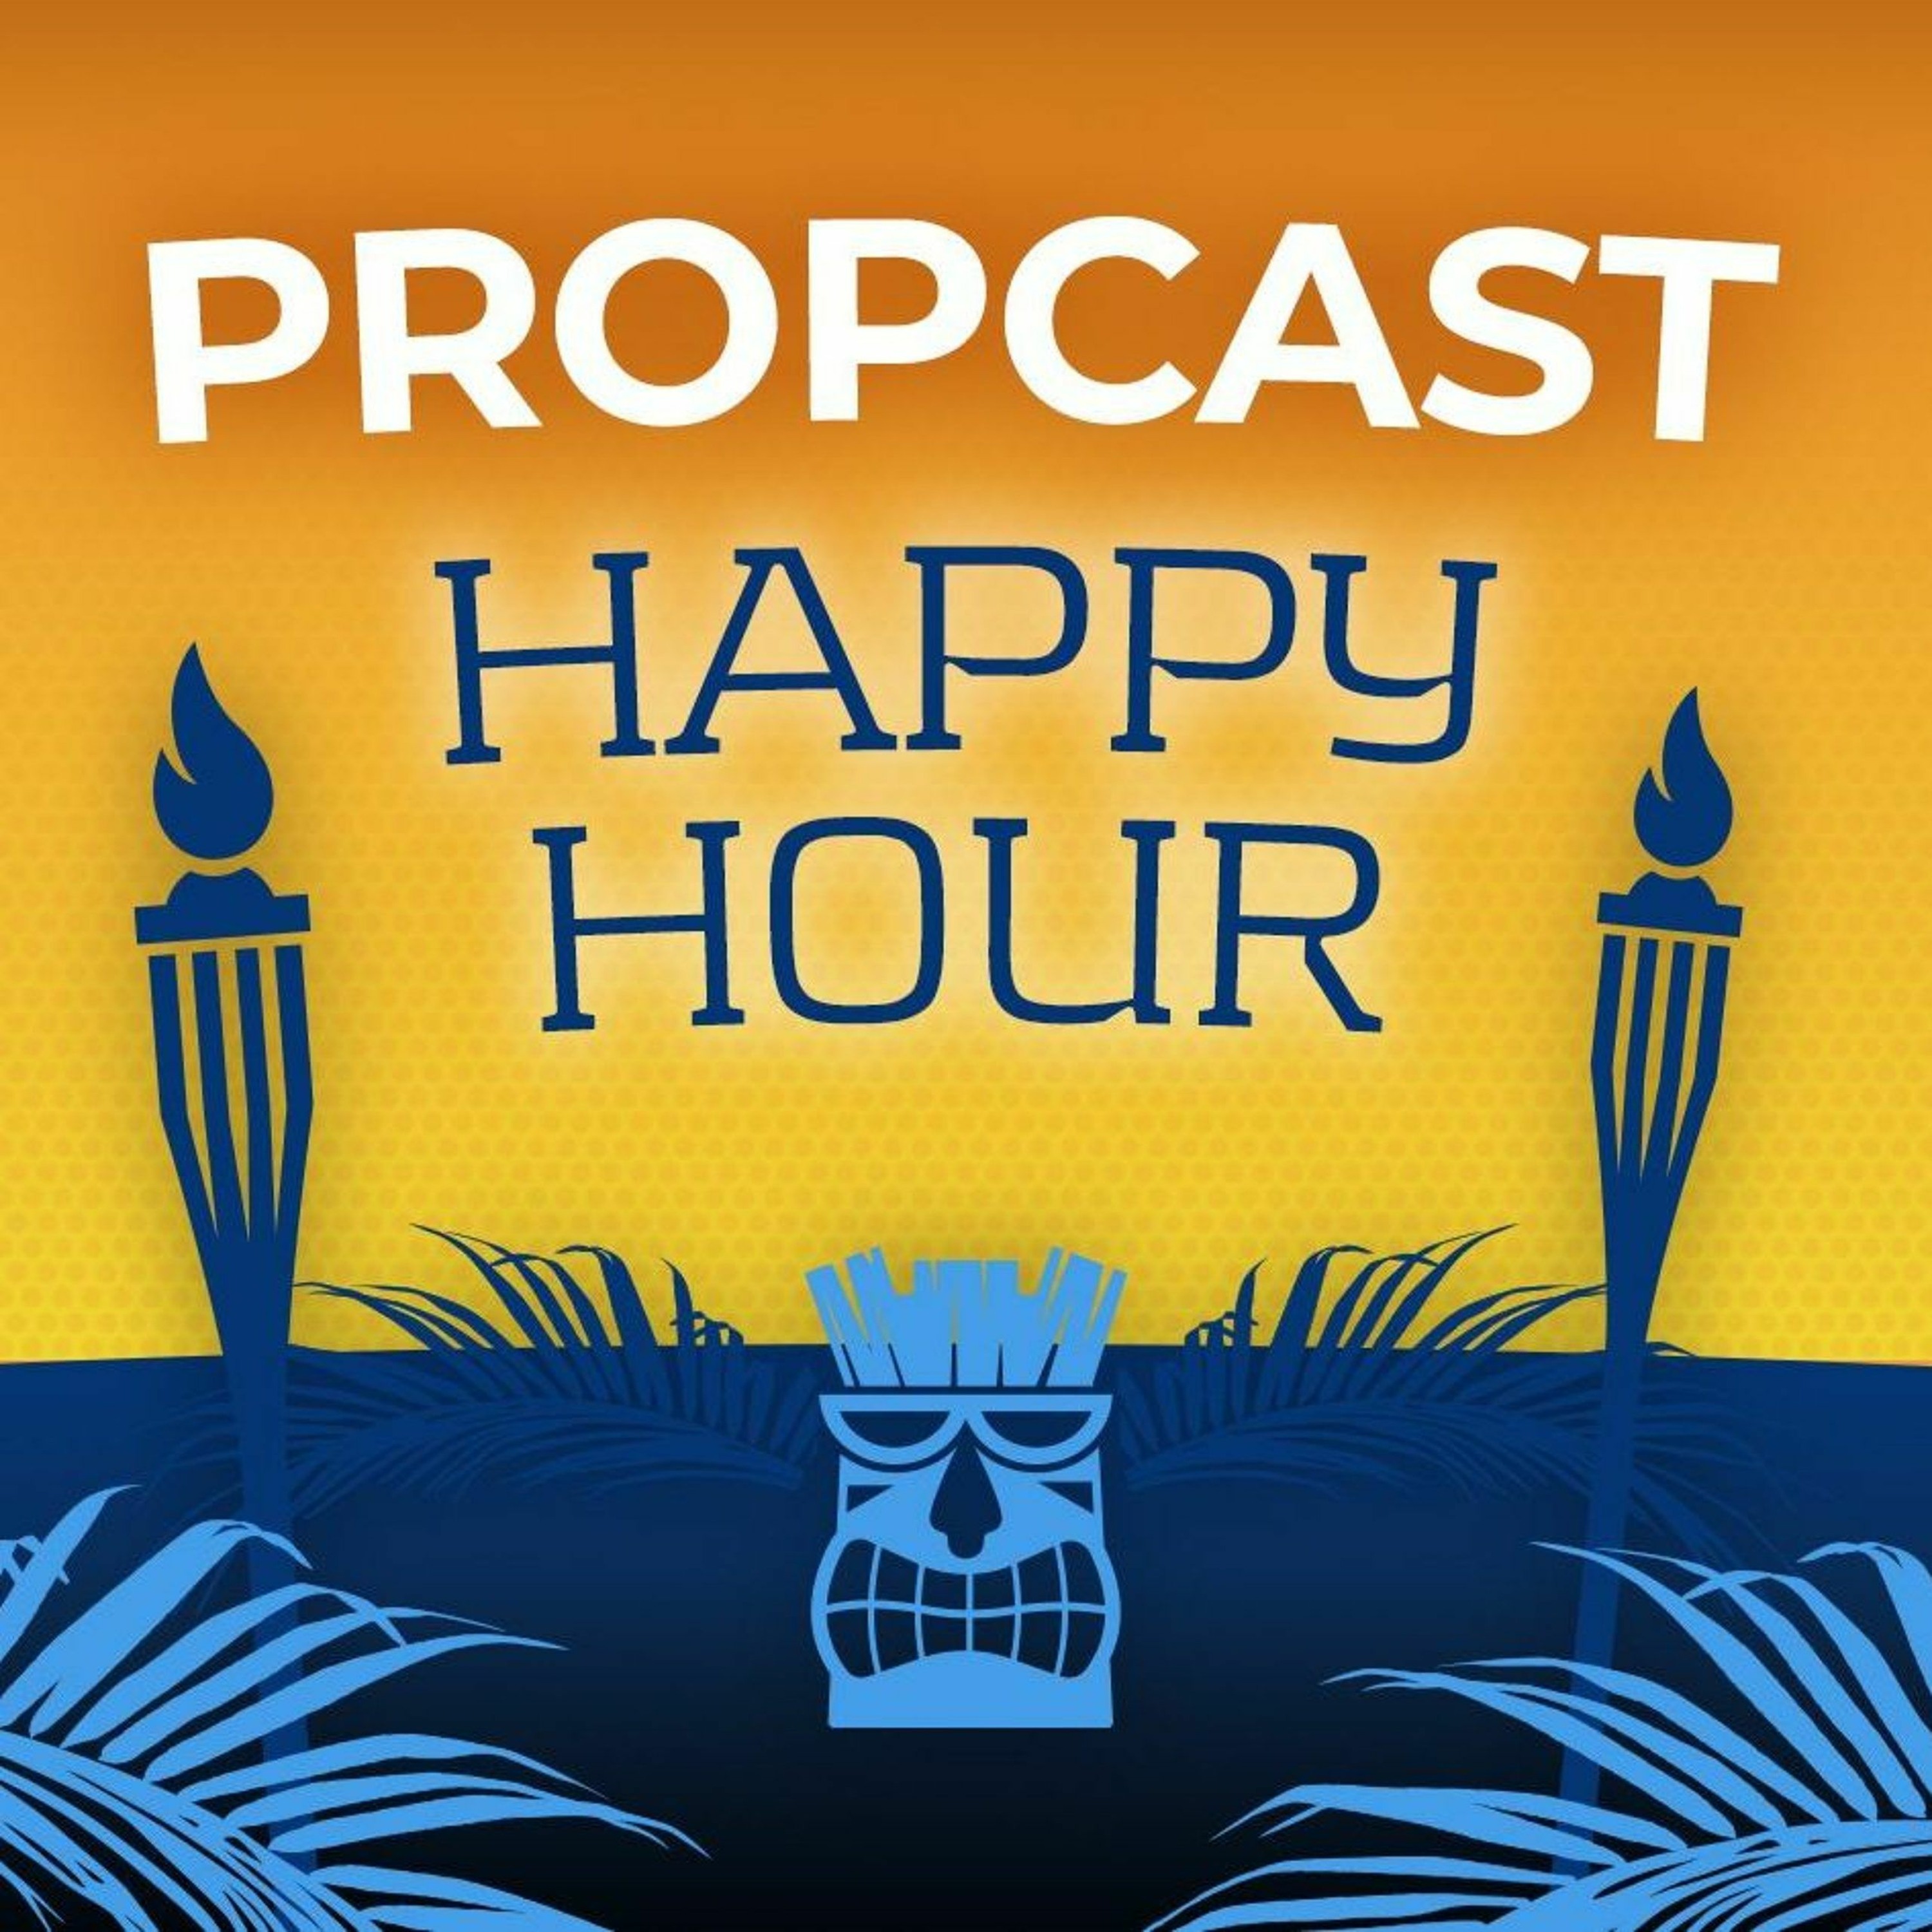 Quez Watkins need for speed - Propcast Happy Hour